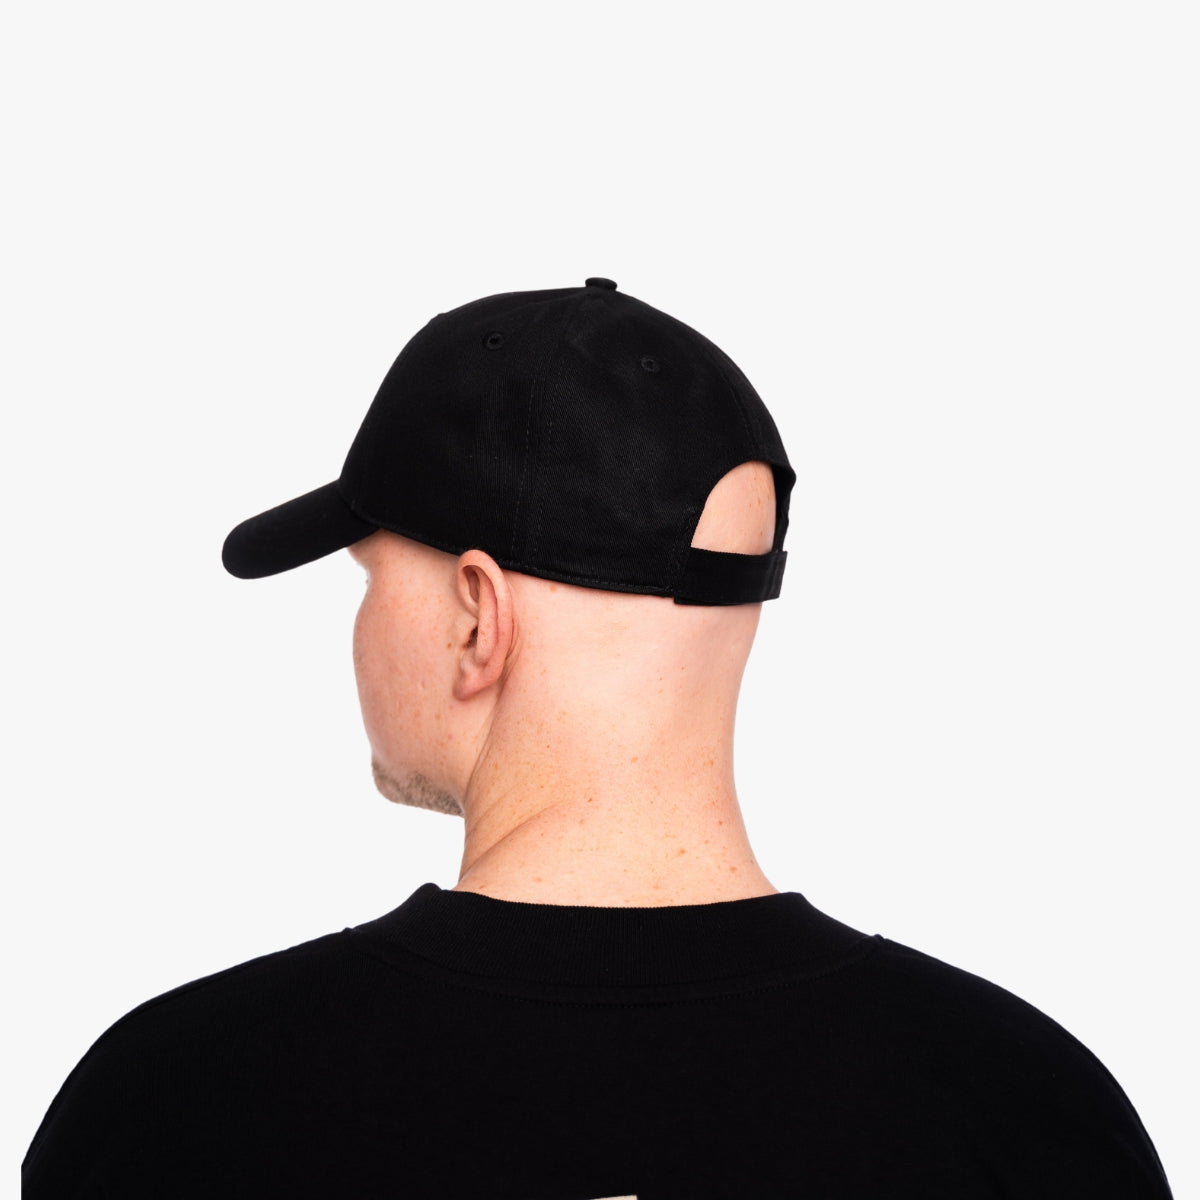 'SAVE THE EARTH' Organic Baseball Cap in der Farbe Black als Nahaufnahme von der Seite, getragen von einem männlichem Model